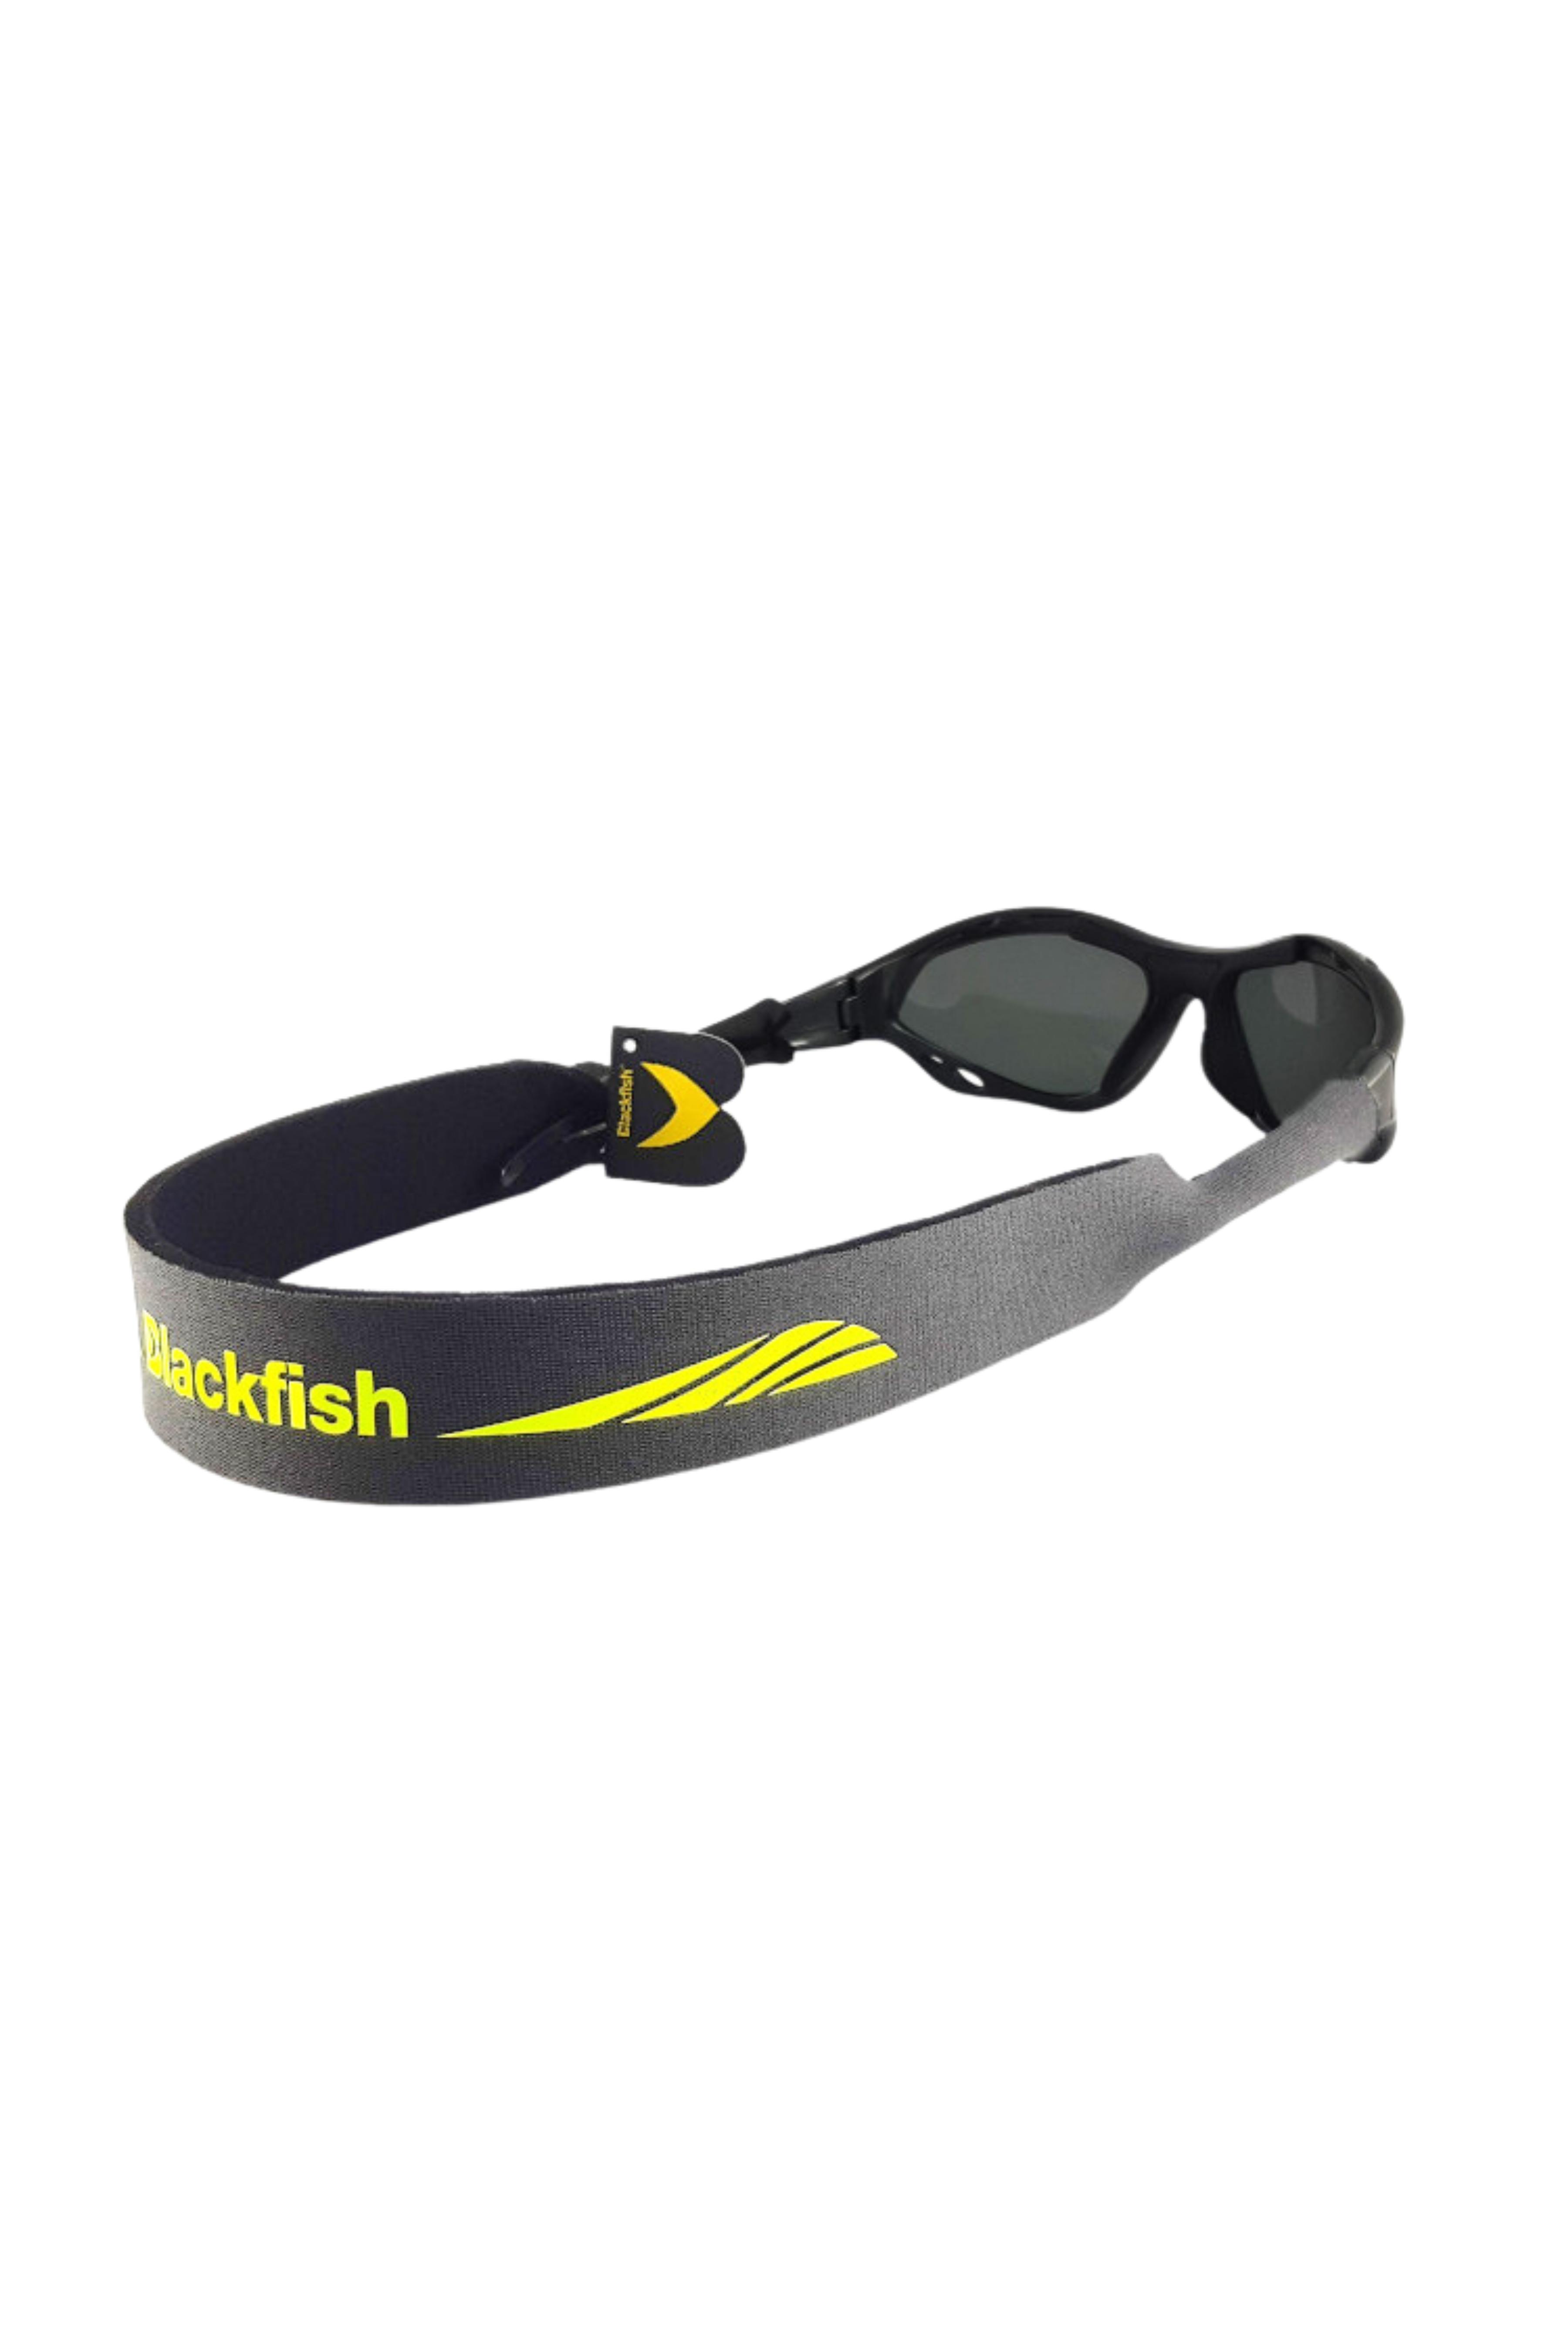 Blackfish Gri-Yeşil Thin Suda Batmaz Gözlük Bandı